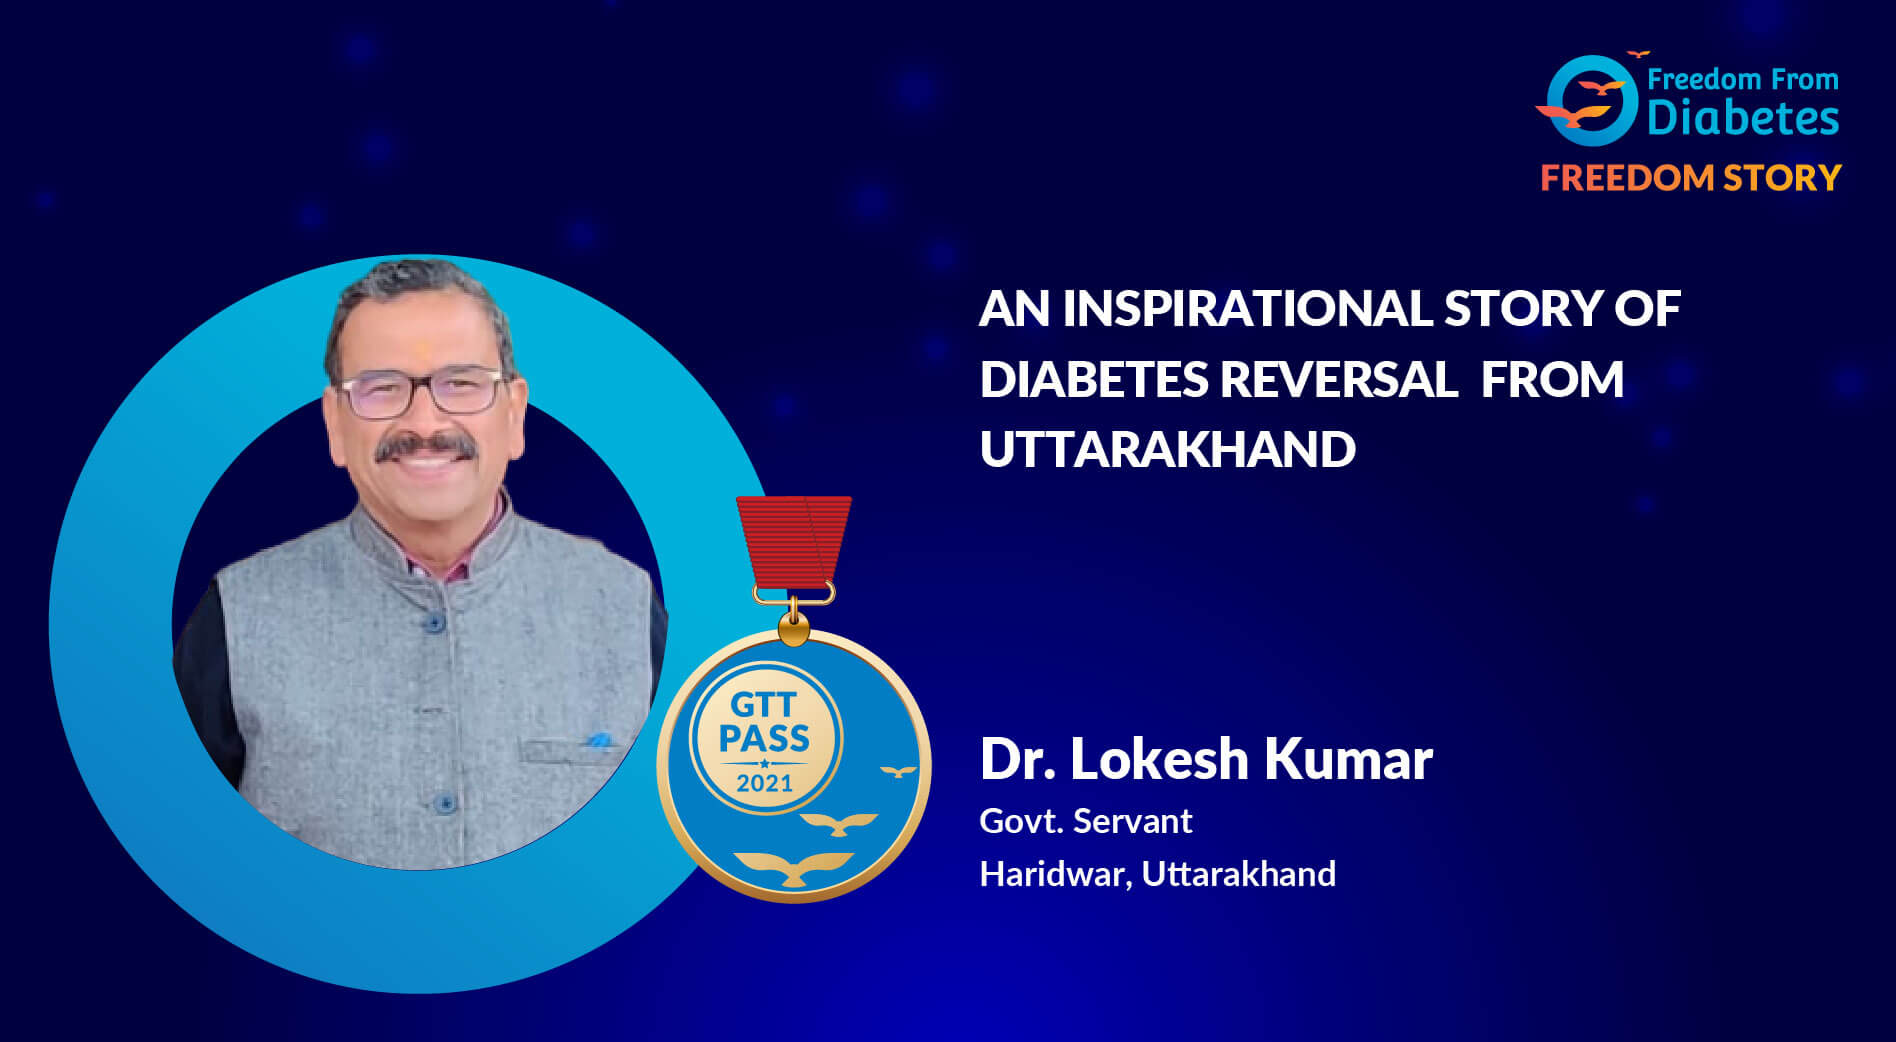 An inspirational story of diabetes reversal from Uttarakhand